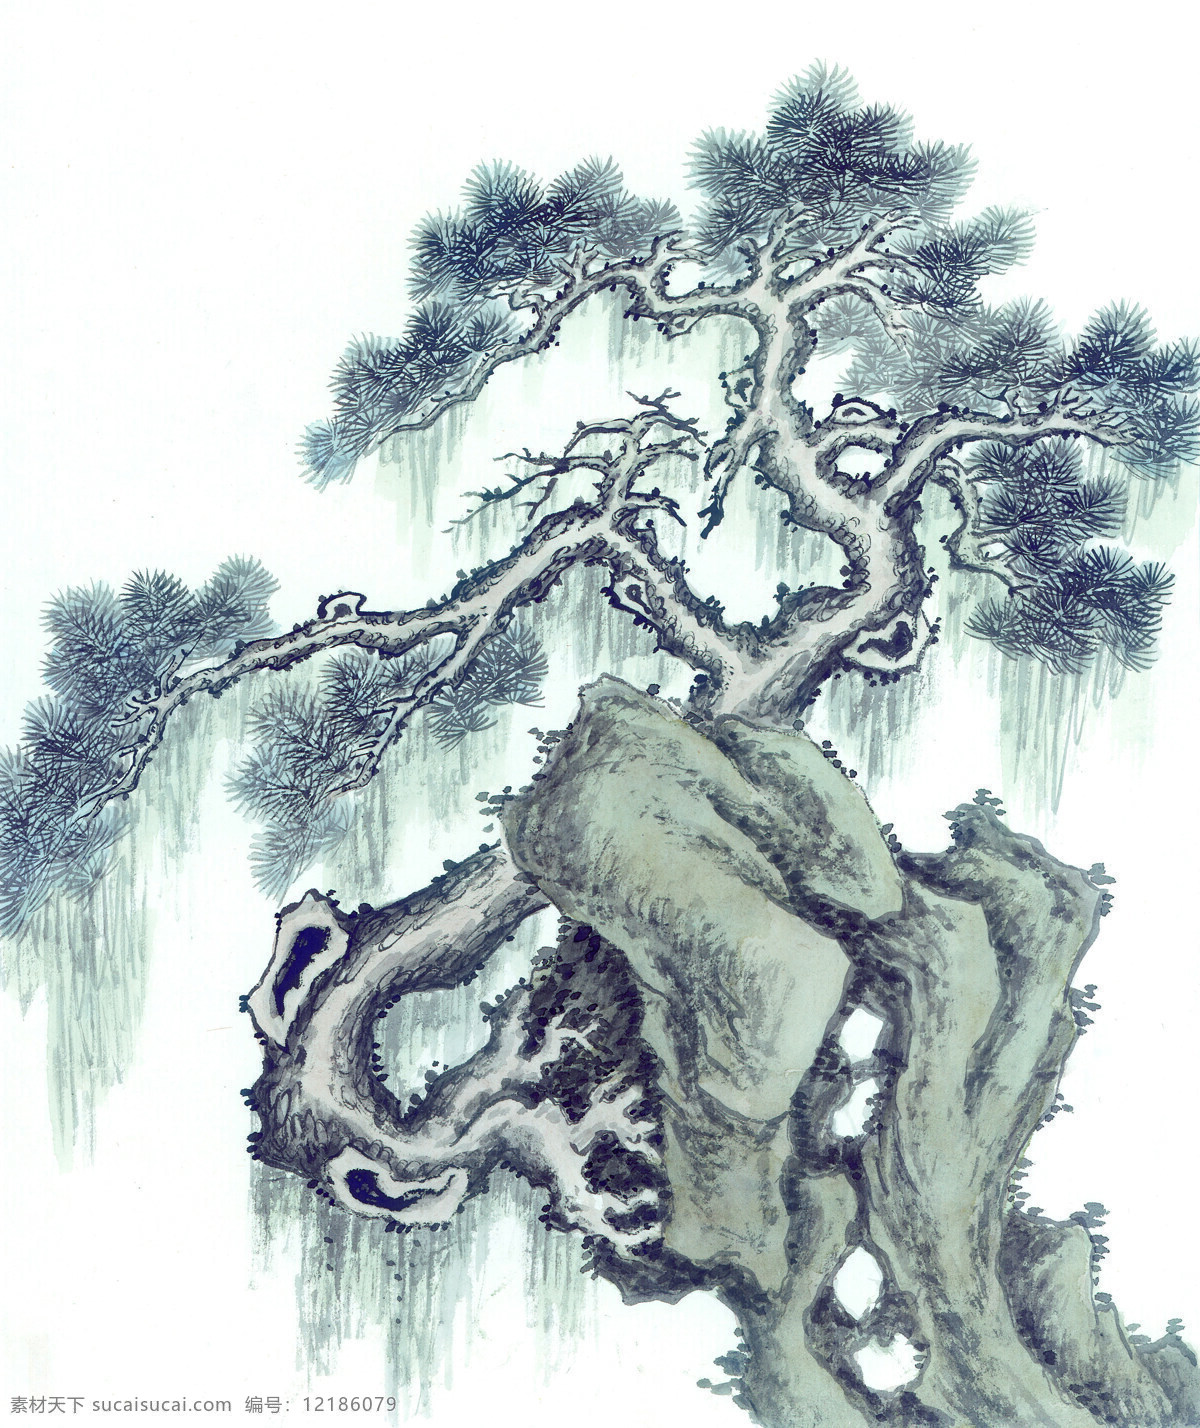 松树 水墨画 高分辩率 非常清晰1 文化艺术 绘画书法 设计图库